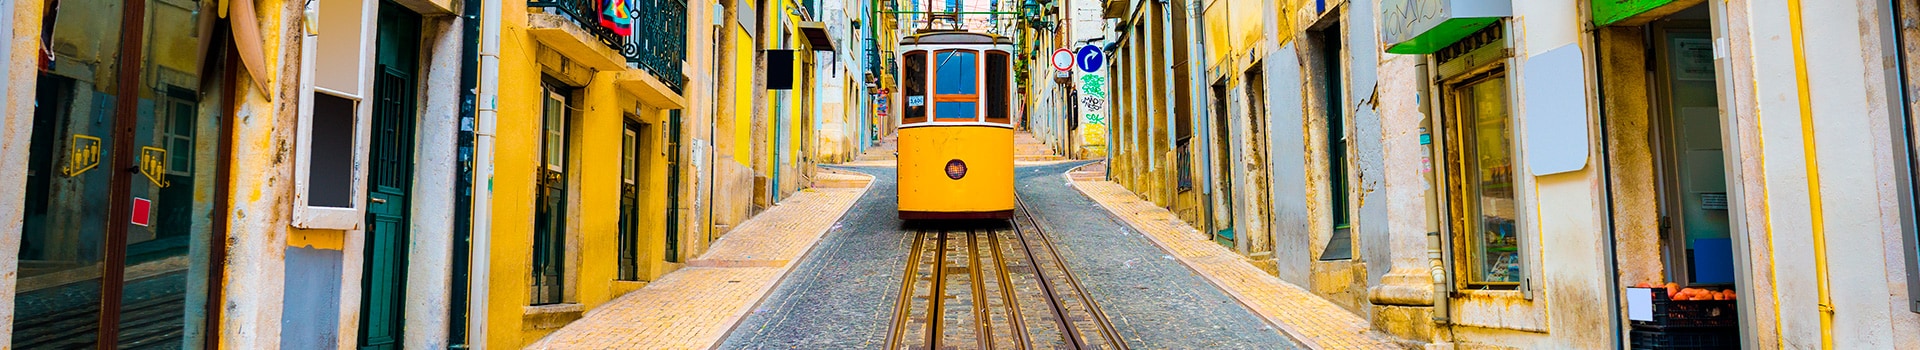 Bari - Lisbon